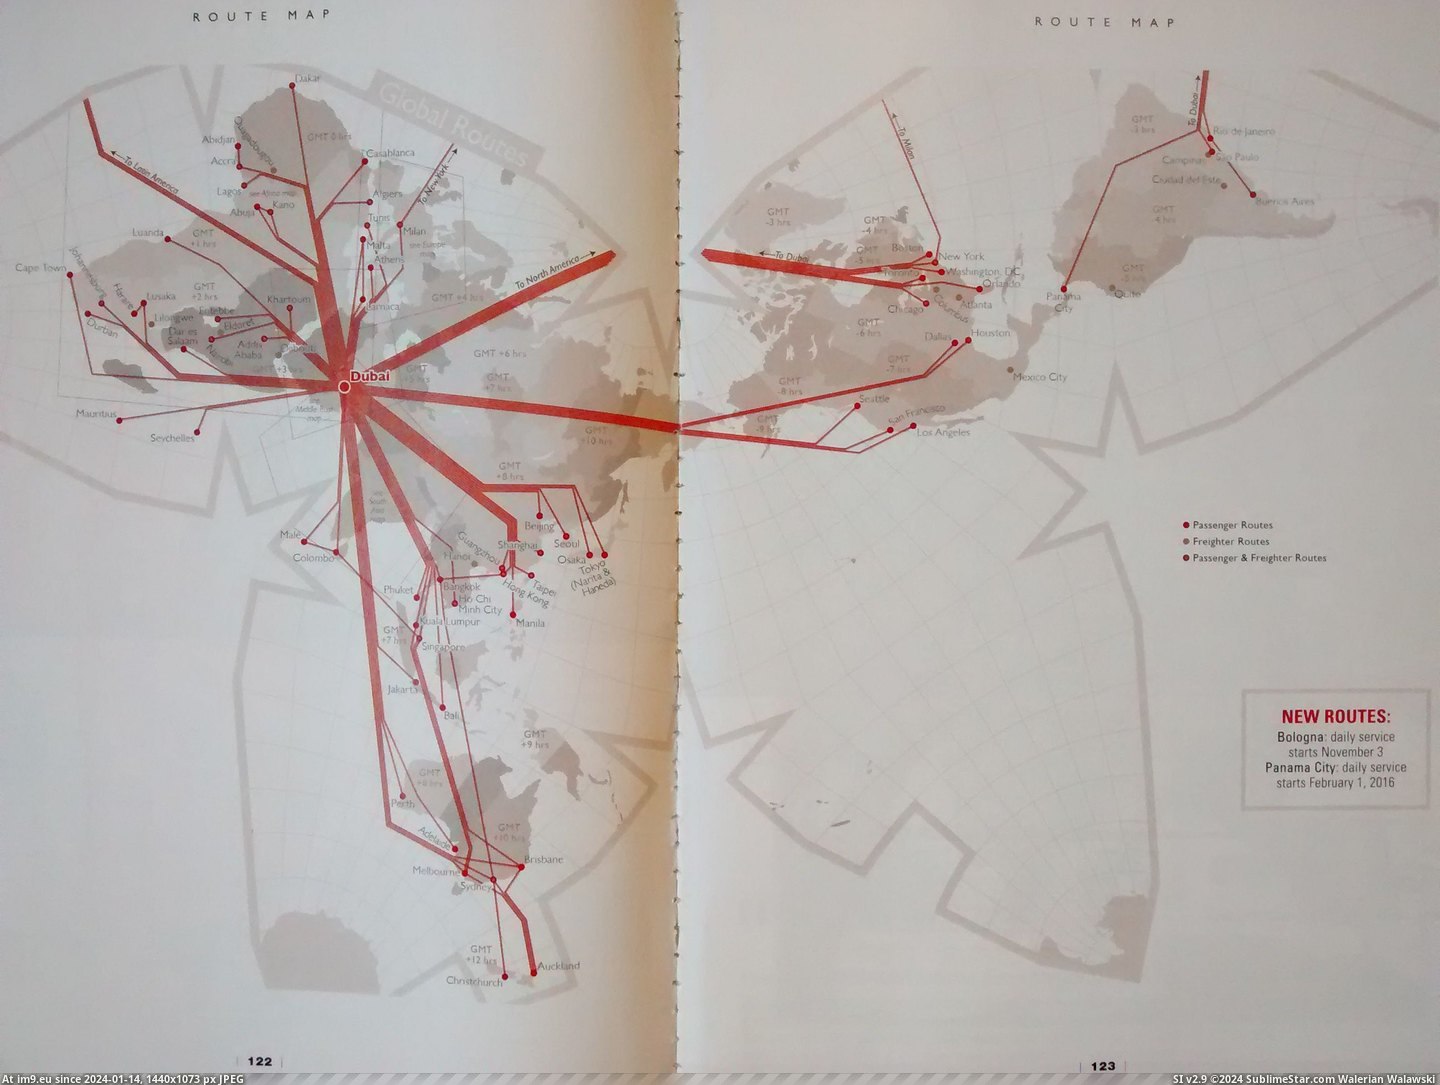 #World #Airways #Emirates #Map [Mapporn] Emirates Airways Map of the World [448*336] Pic. (Bild von album My r/MAPS favs))